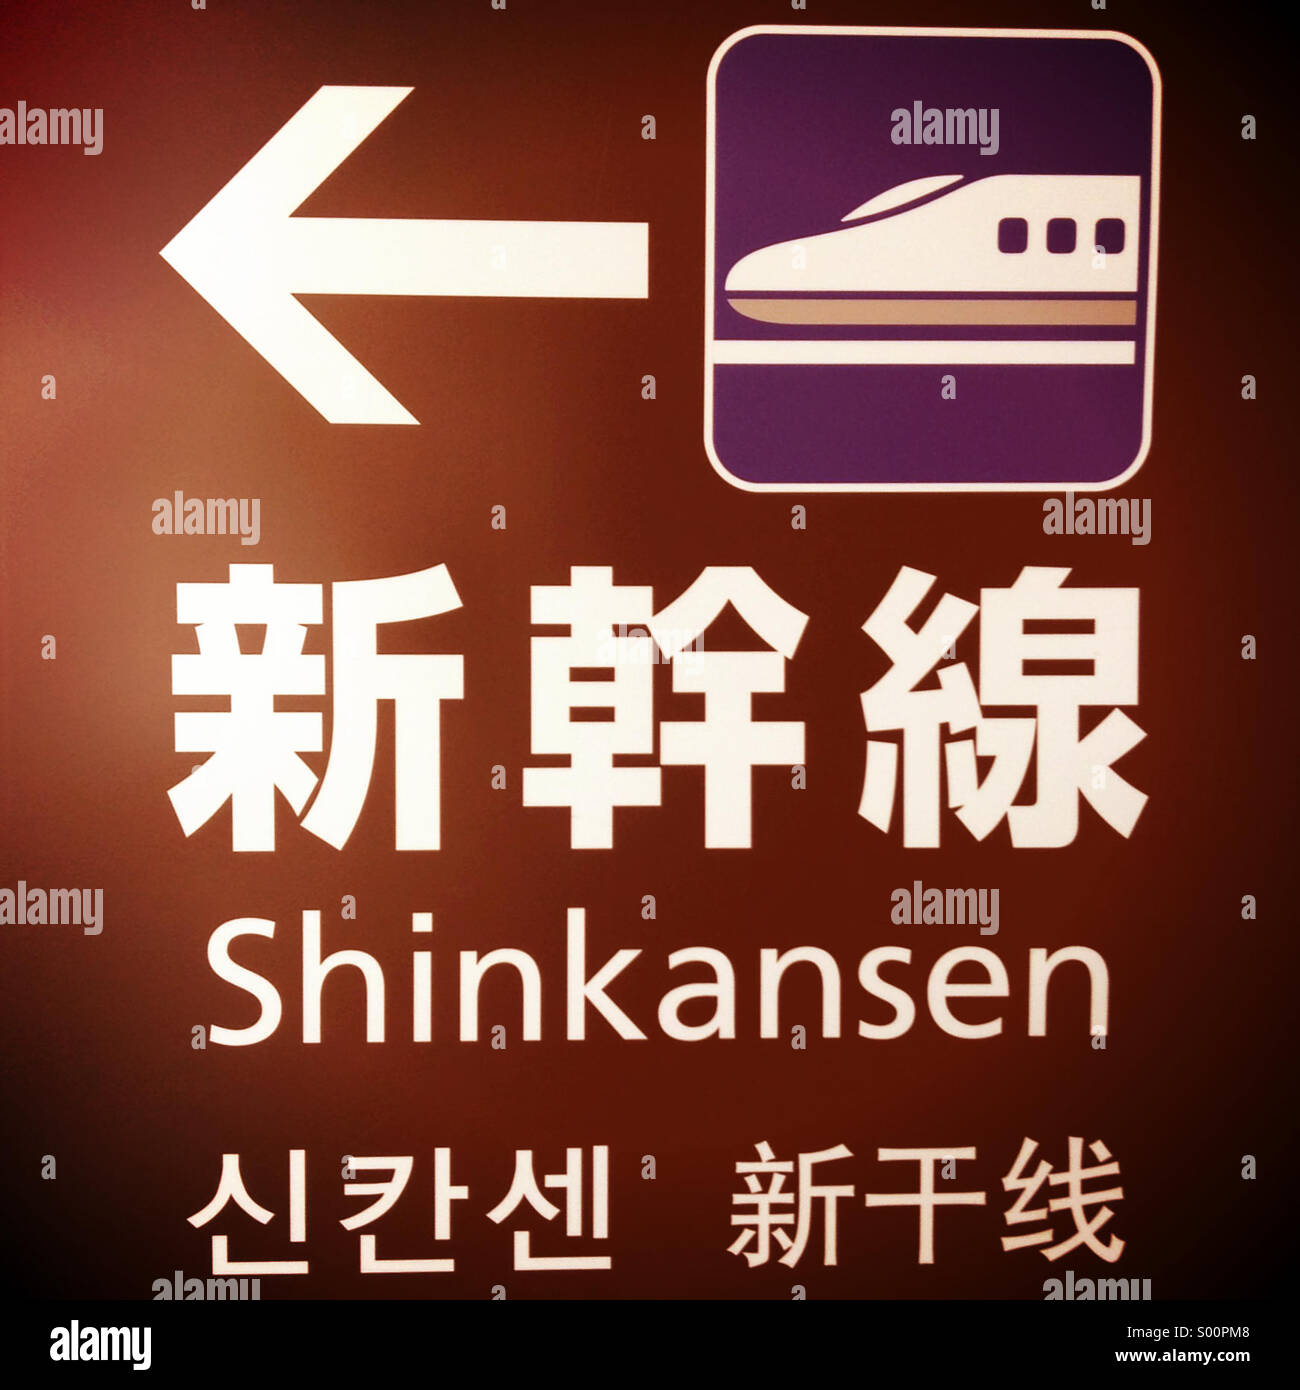 Un segno per il Giappone del 'shinkansen' bullet train mostrato in Giapponese, Inglese, coreano e cinese. Foto Stock